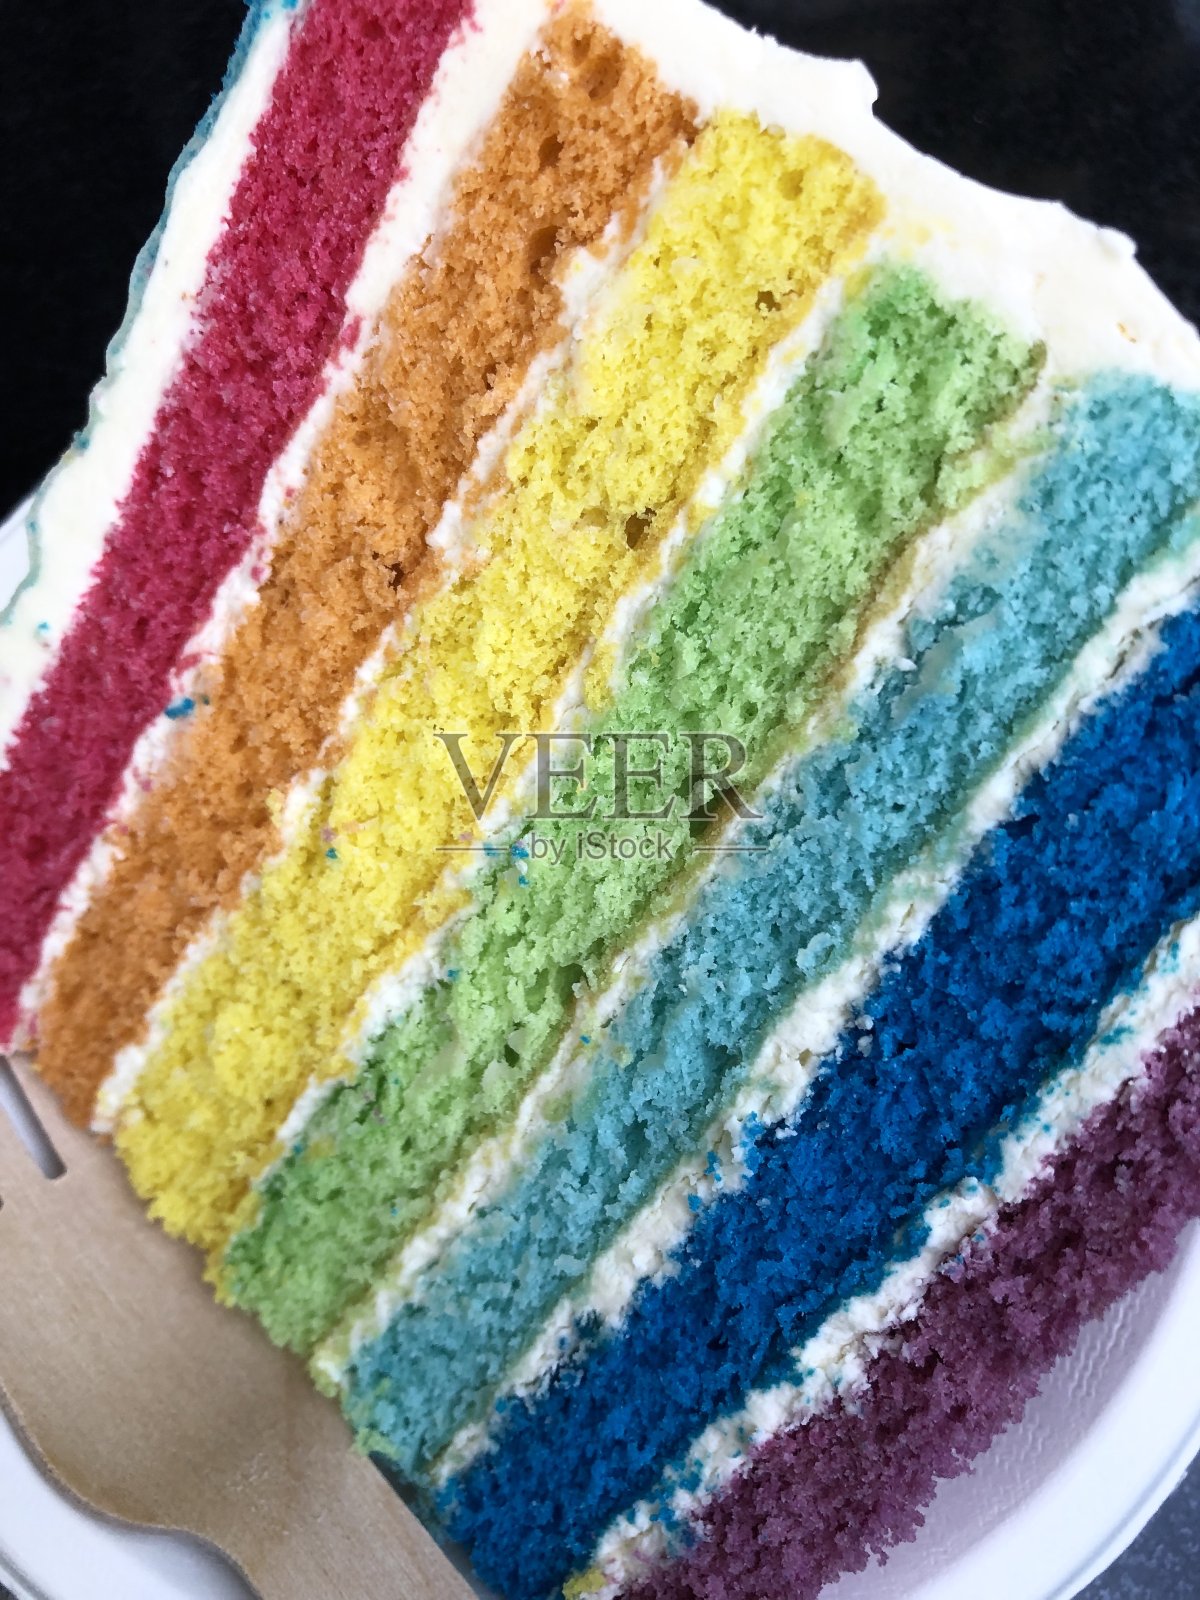 彩虹蛋糕的切片图像显示了多色海绵层与奶油糖霜的照片照片摄影图片